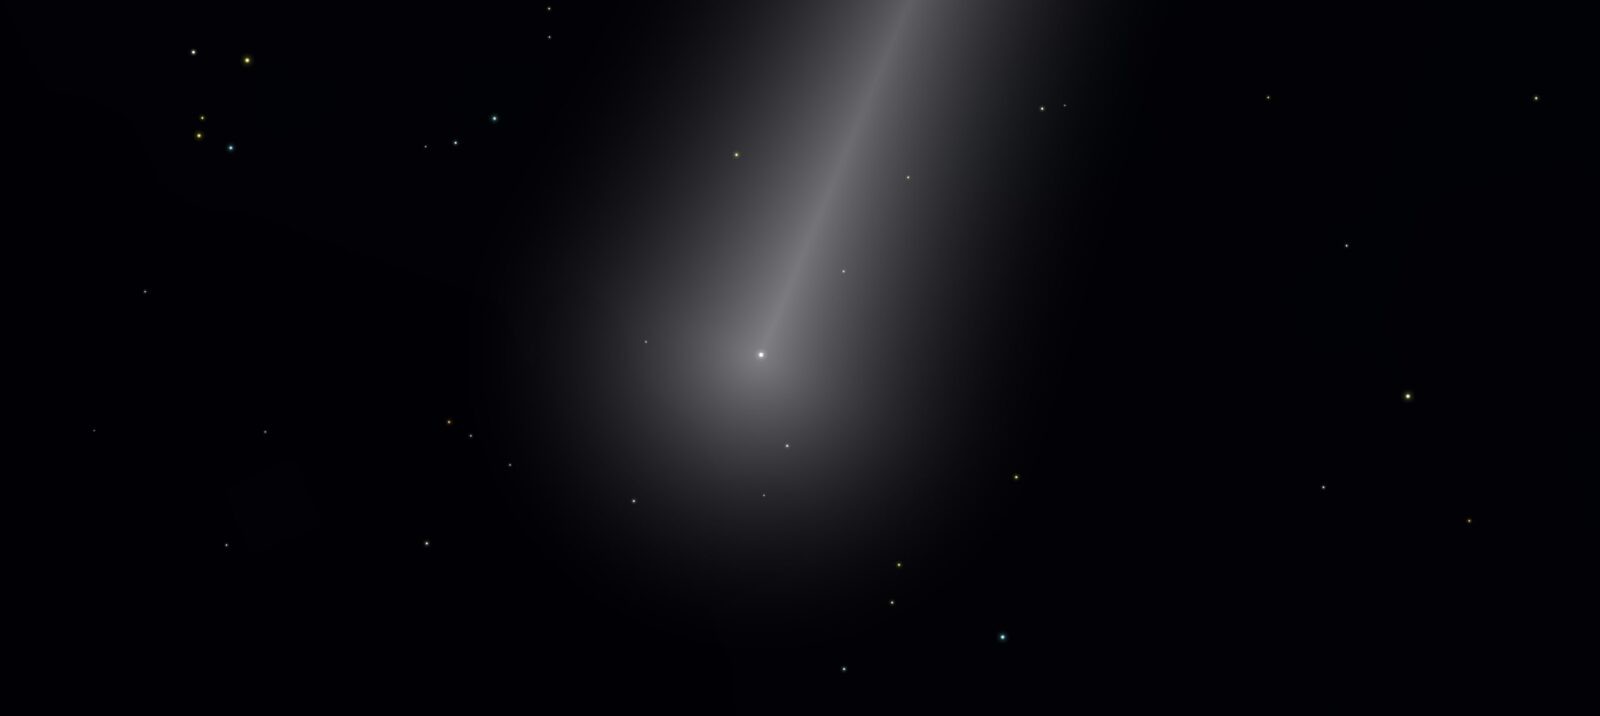 Wybuchowa kometa skrywa w swoim sercu zdumiewającą spiralę. Spójrzcie na to zdjęcie